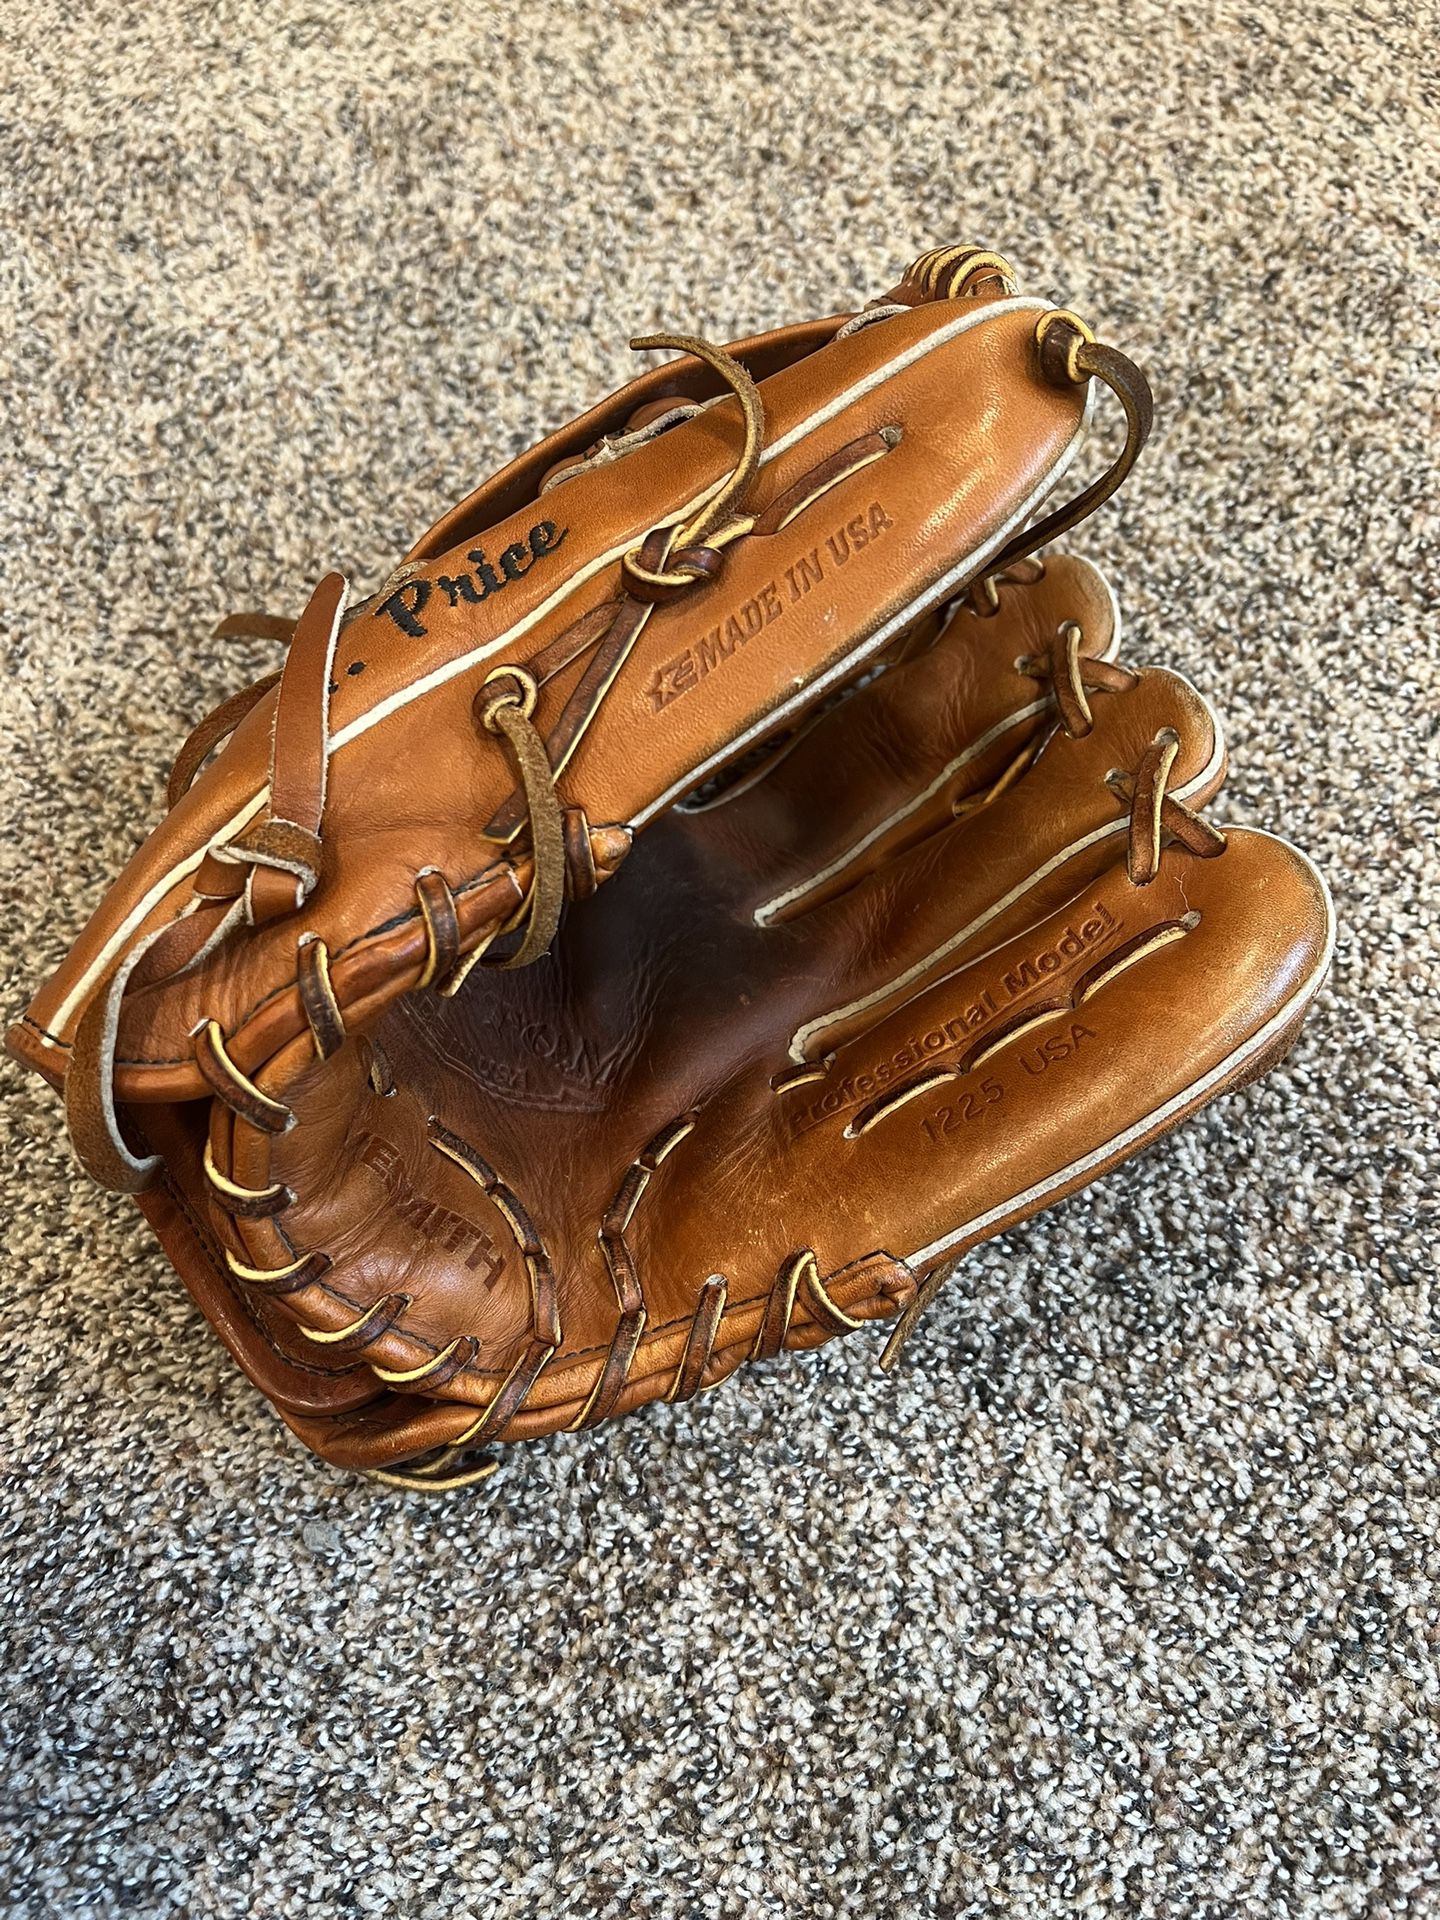 Men’s Glovesmith baseball glove.